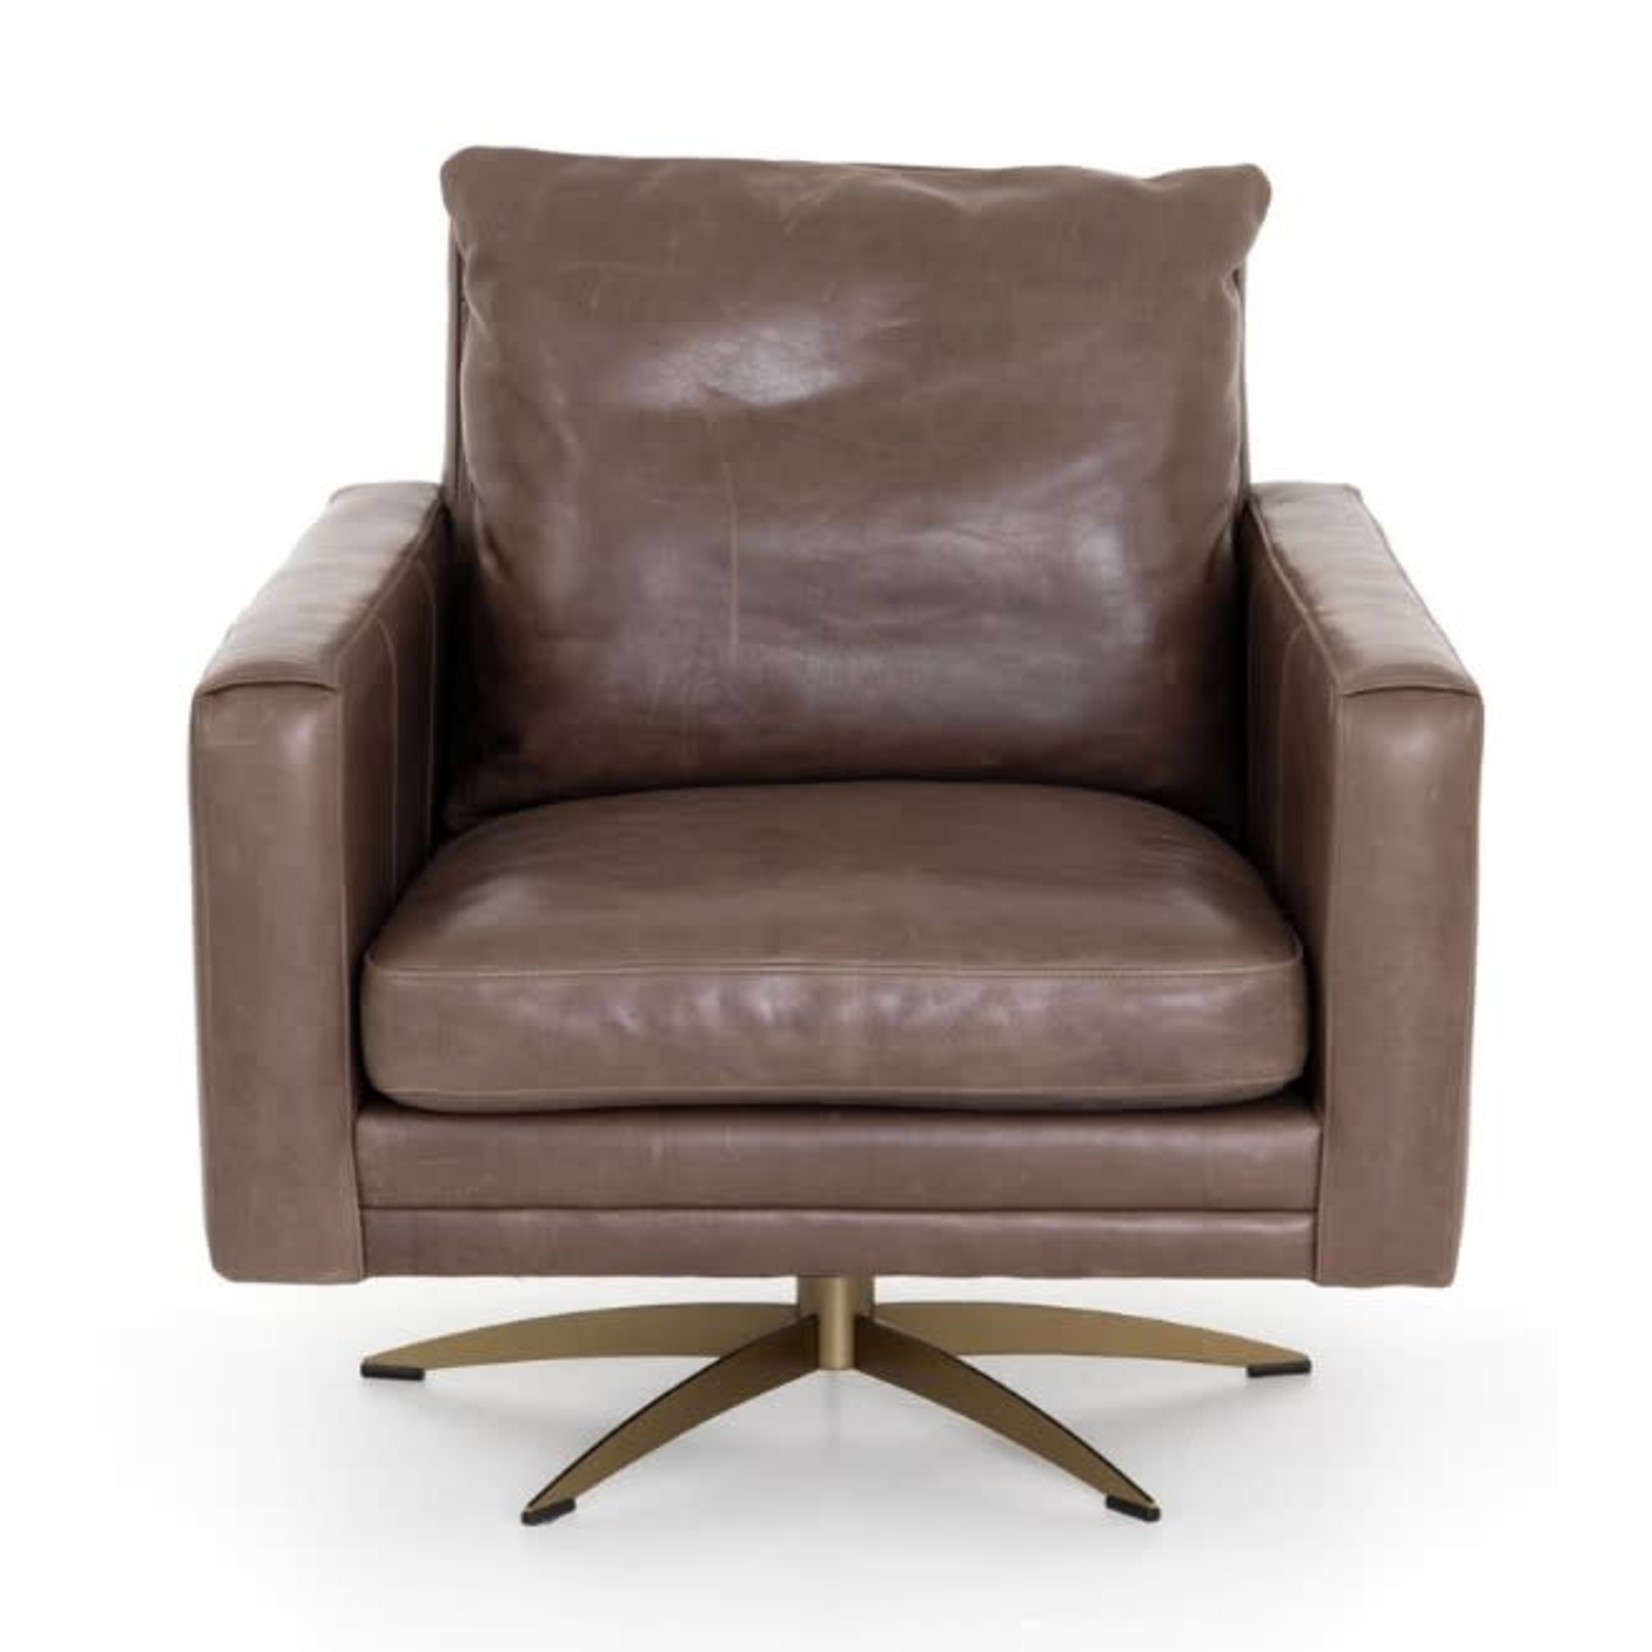 Mickler & Co. Landon Swivel Chair